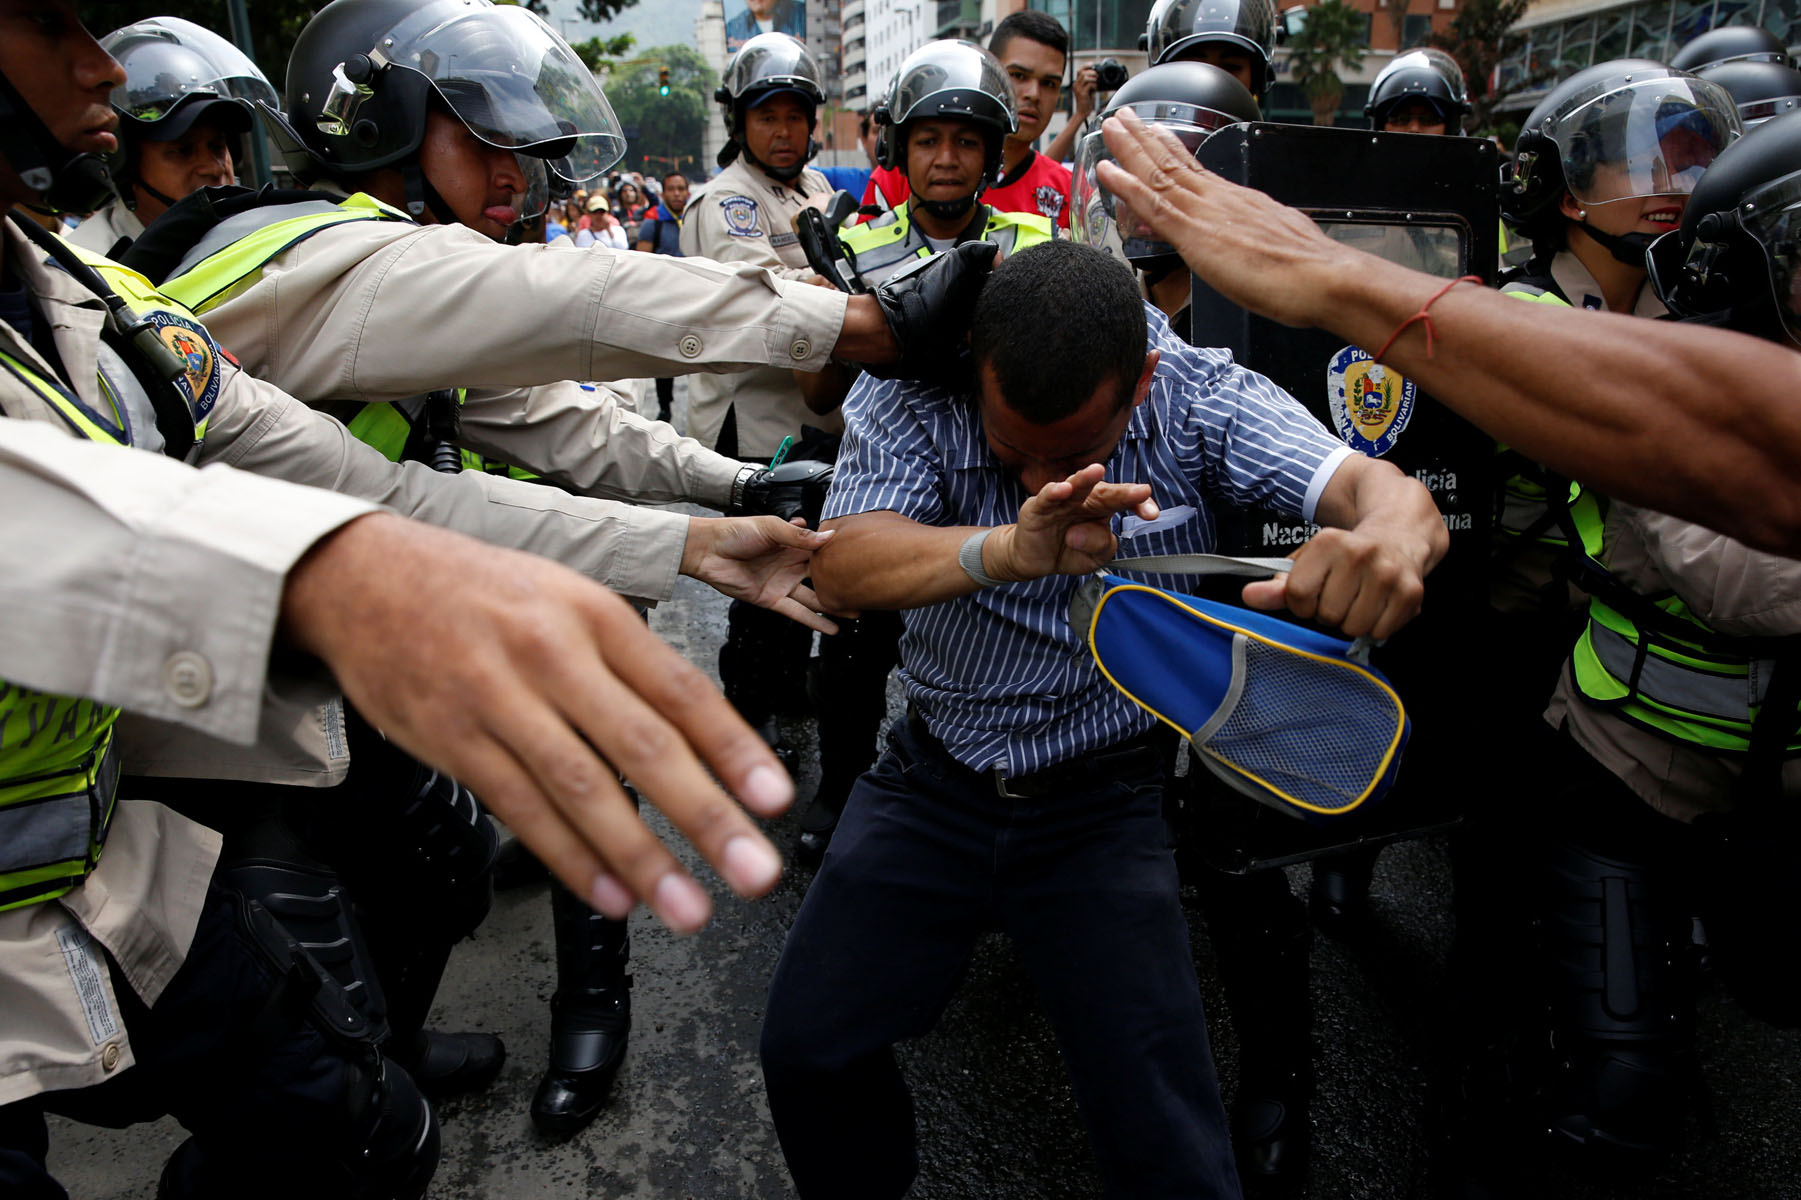 Hay una terrible violación de derechos humanos en Venezuela, según gobierno de España